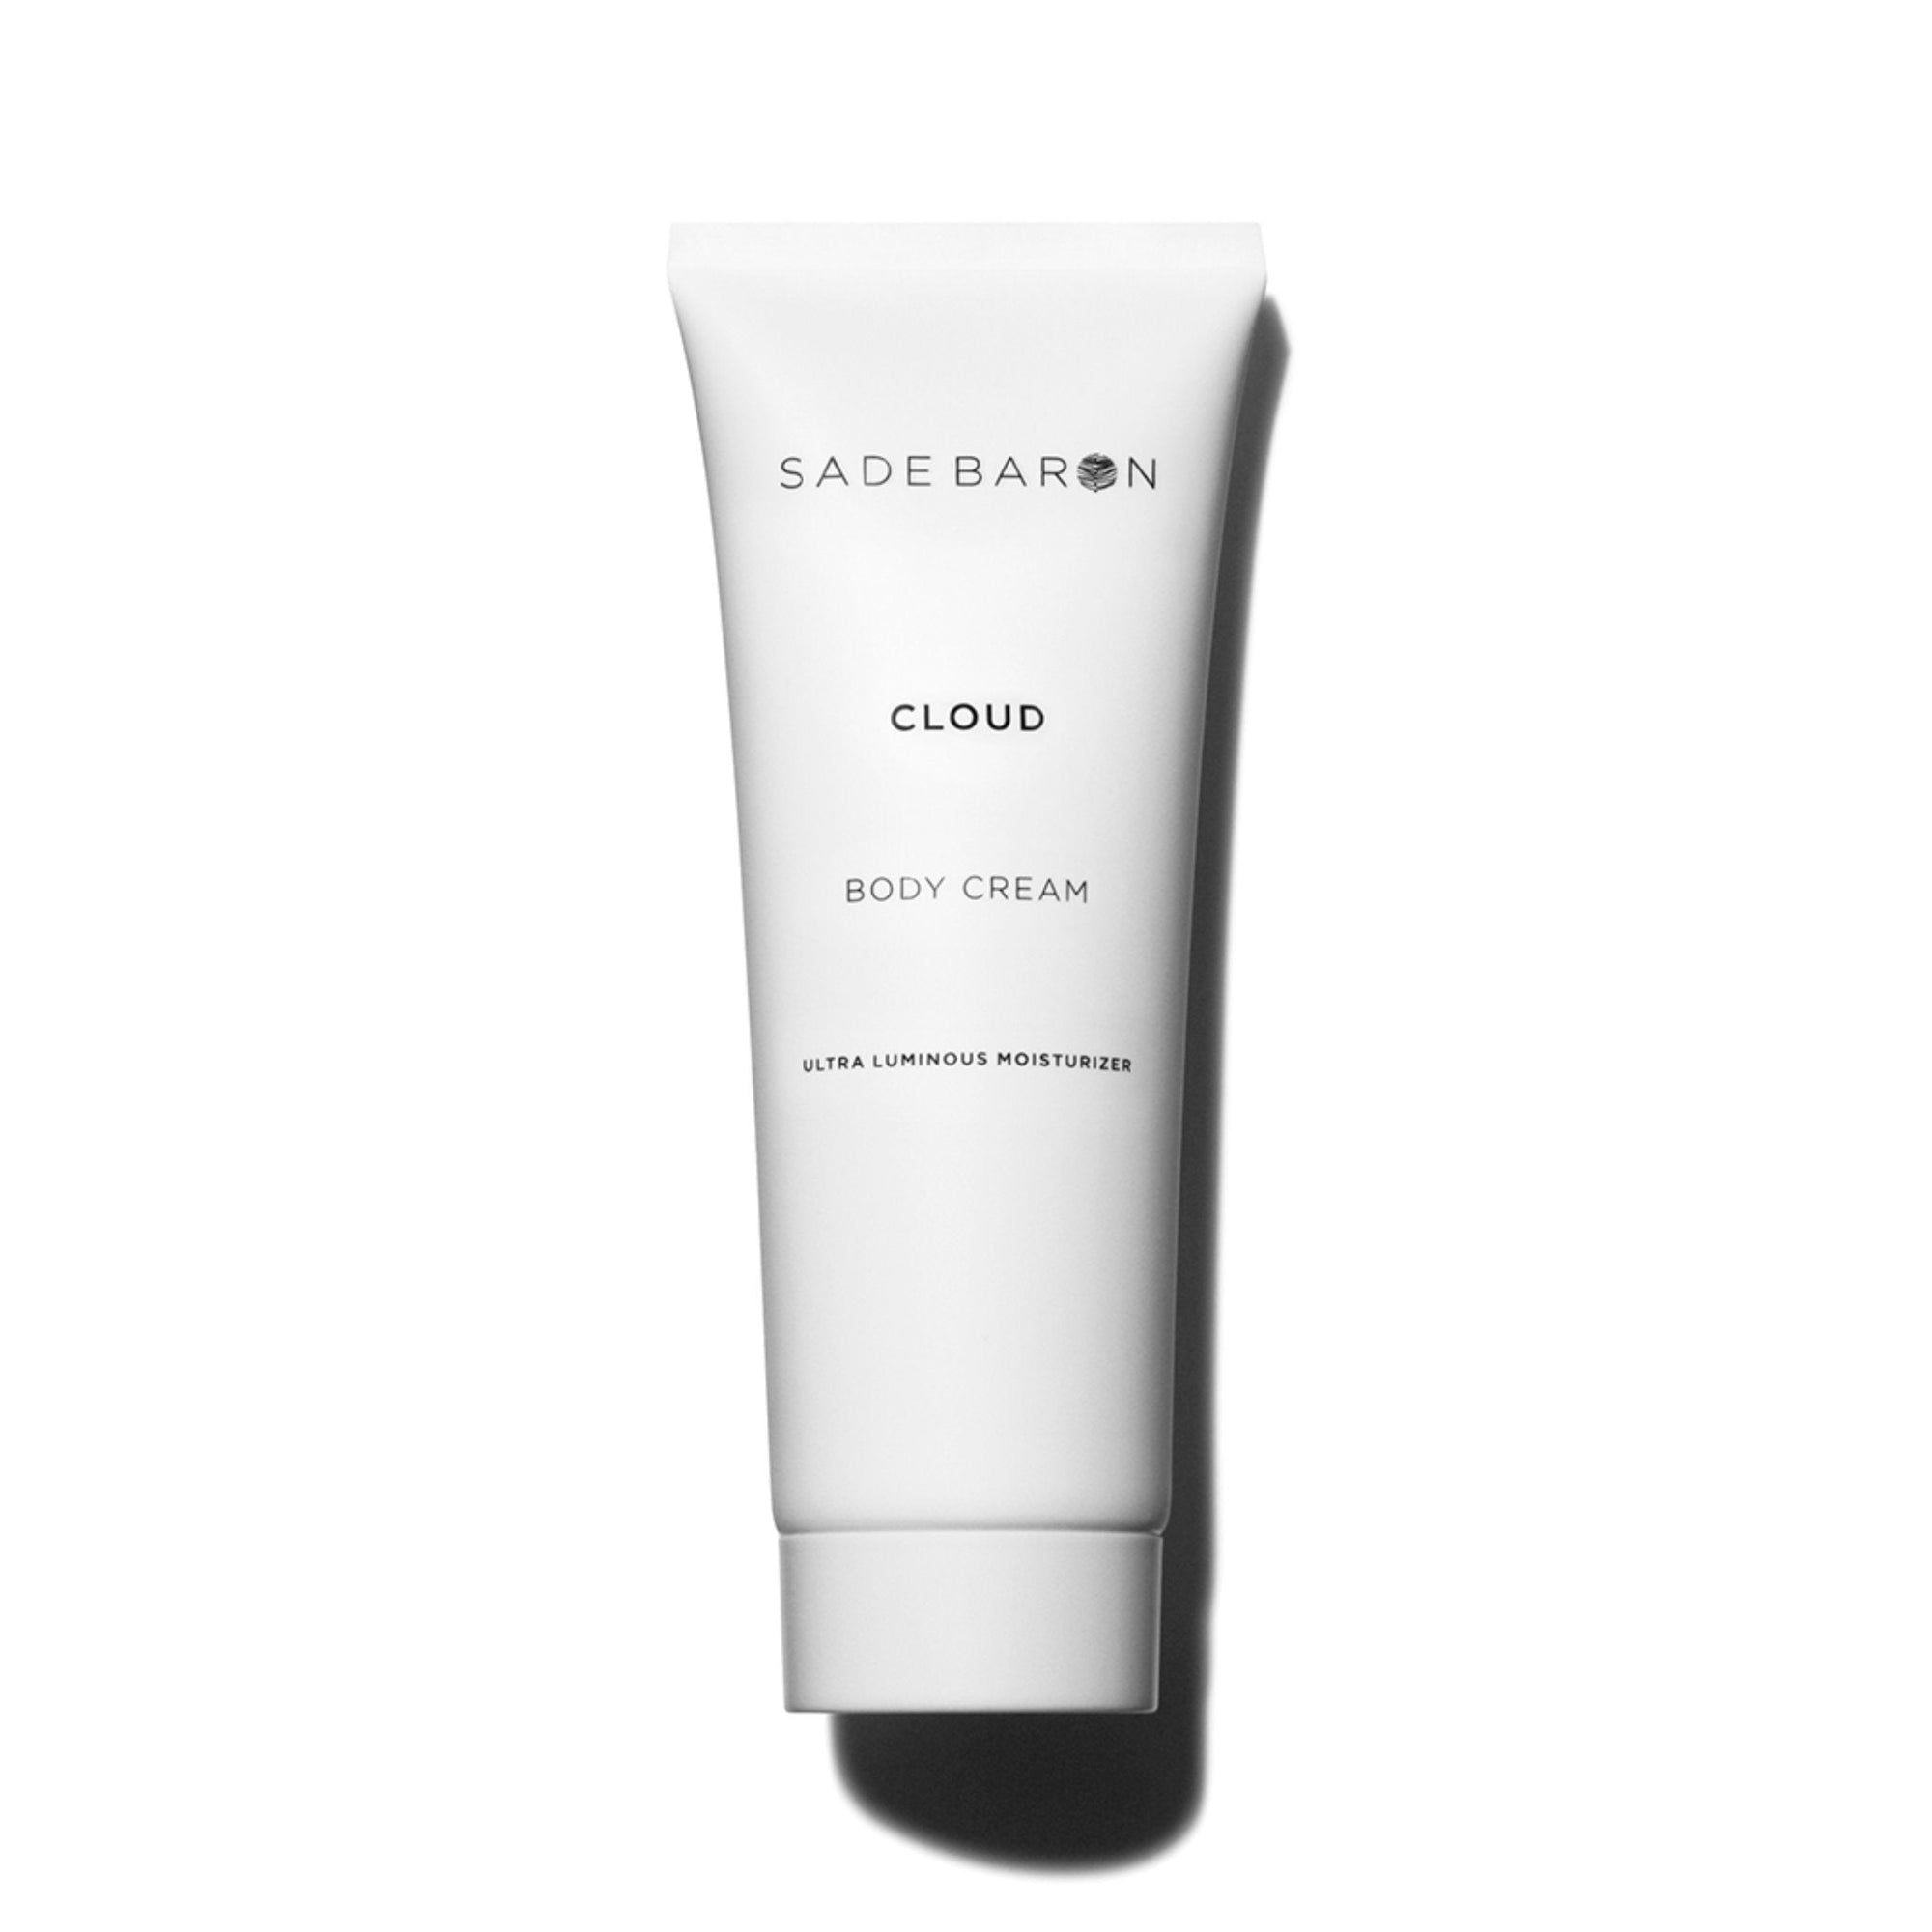 Sade Baron - Sade Baron Cloud Body Cream - ORESTA clean beauty simplified